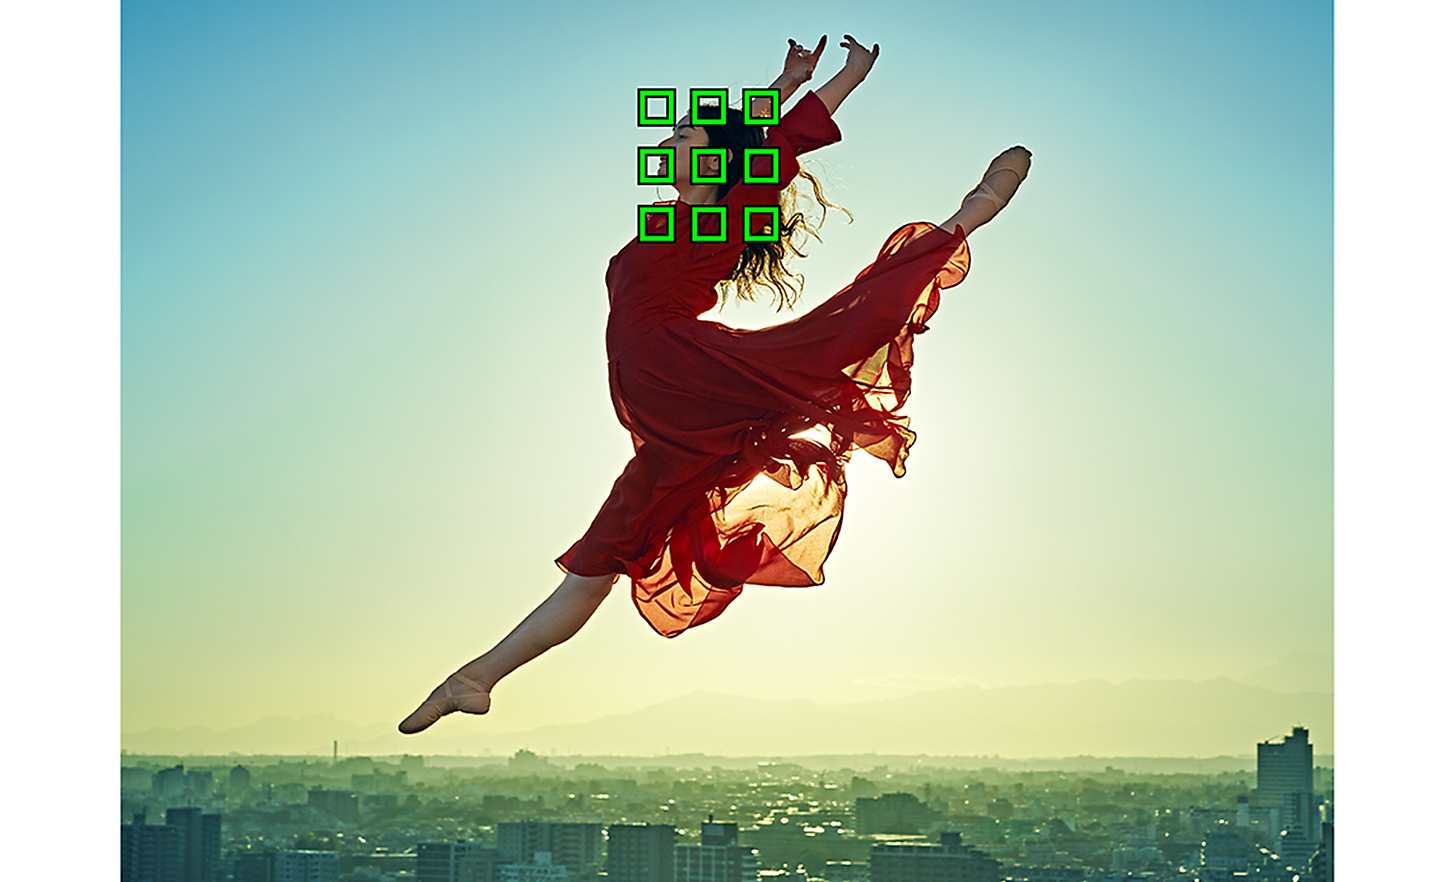 En hoppande dansare i röd klänning framför en imponerande stadsbild – de nio gröna rutorna representerar avkänning av AI-motiv